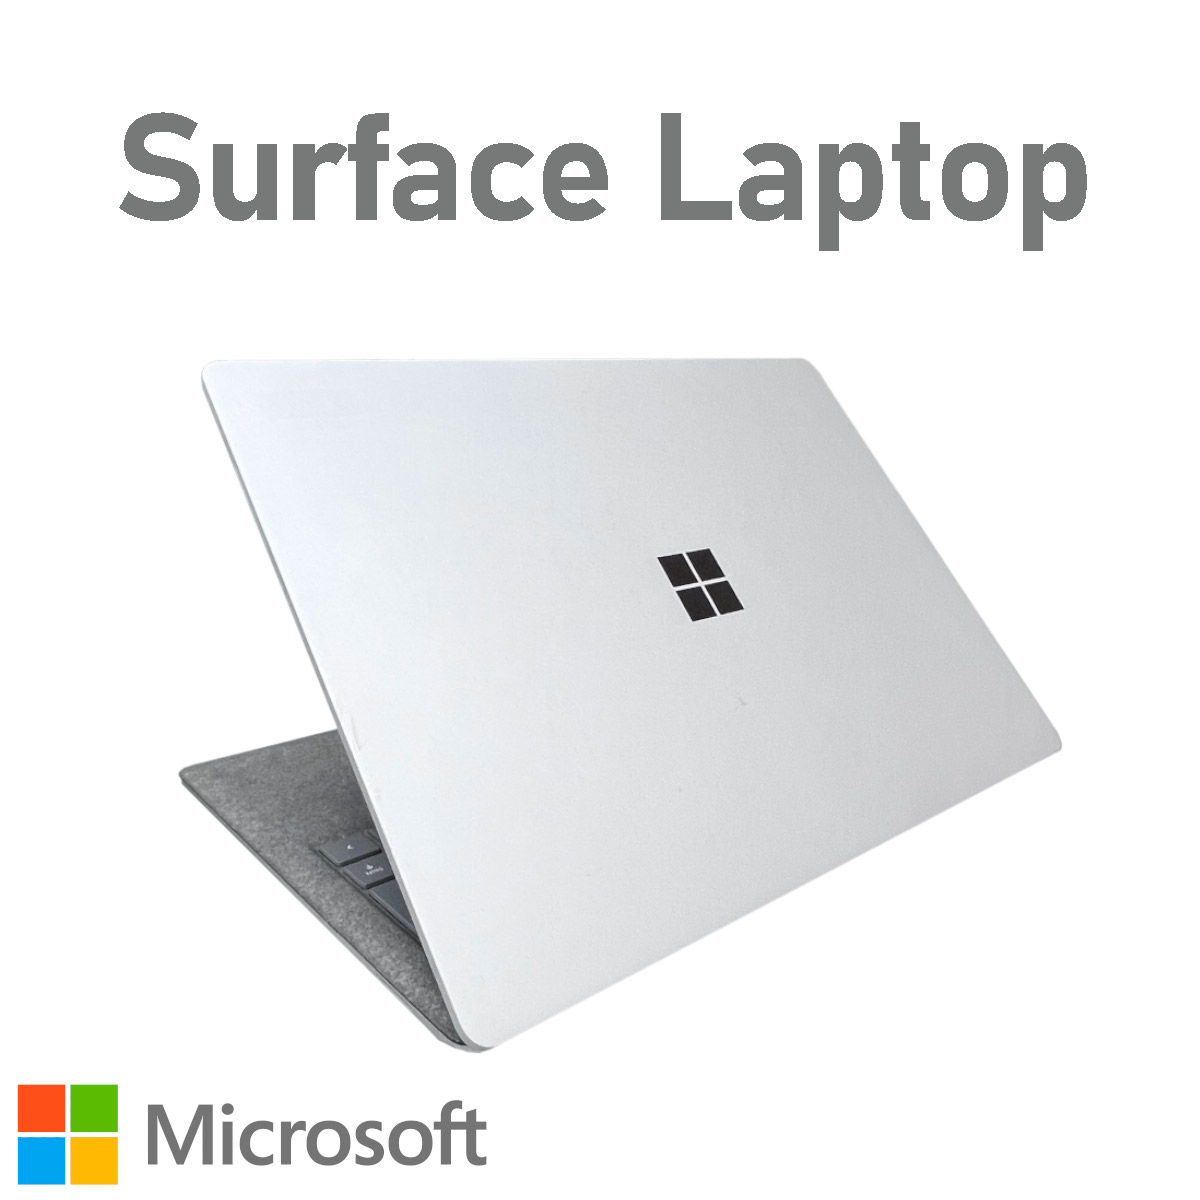 中古ノートパソコン 中古 パソコン ノートpc ノートパソコン 初期設定済 届いたらすぐ使える Microsoft Surface Laptop 第1世代 メモリ 8gb Ssd 256gb 第7世代 Core I5 13 5インチ プラチナ Windows11 Wps Office Webカメラ 2in1 タッチパネル タブレットpc